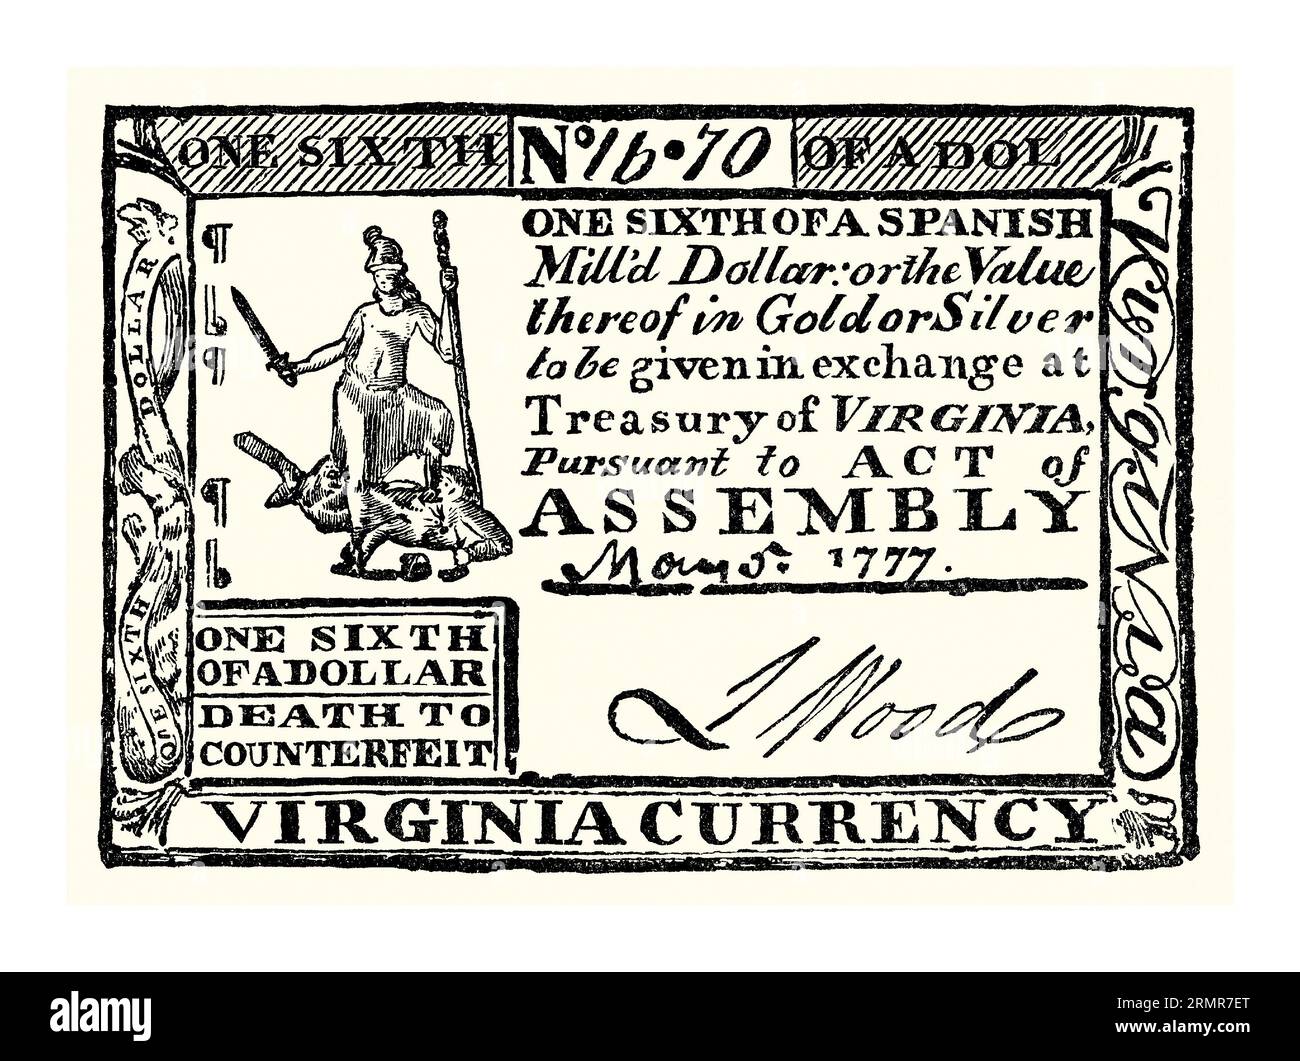 Ein alter Gravur von Papierwährung – ein Sechstel eines Dollarscheines – wurde 1777 in Virginia, USA, verwendet. Es stammt aus einem amerikanischen Geschichtsbuch aus dem Jahr 1895. Nach Beginn des Amerikanischen Unabhängigkeitskrieges 1775 begann der Kontinentalkongress mit der Ausgabe von Papiergeld, das als Kontinentalwährung oder Kontinentalwährung bekannt ist. Diese Währung lautete in Dollar von 1/6 bis 80 Dollar. Ein großes Problem bestand darin, dass die Geldpolitik nicht zwischen den staaten koordiniert wurde. Ein weiteres Problem war, dass die Briten erfolgreich Wirtschaftskriege führten, indem sie Kontinentals in großem Stil fälschten (siehe Anmerkung unten links auf der Rechnung). Stockfoto